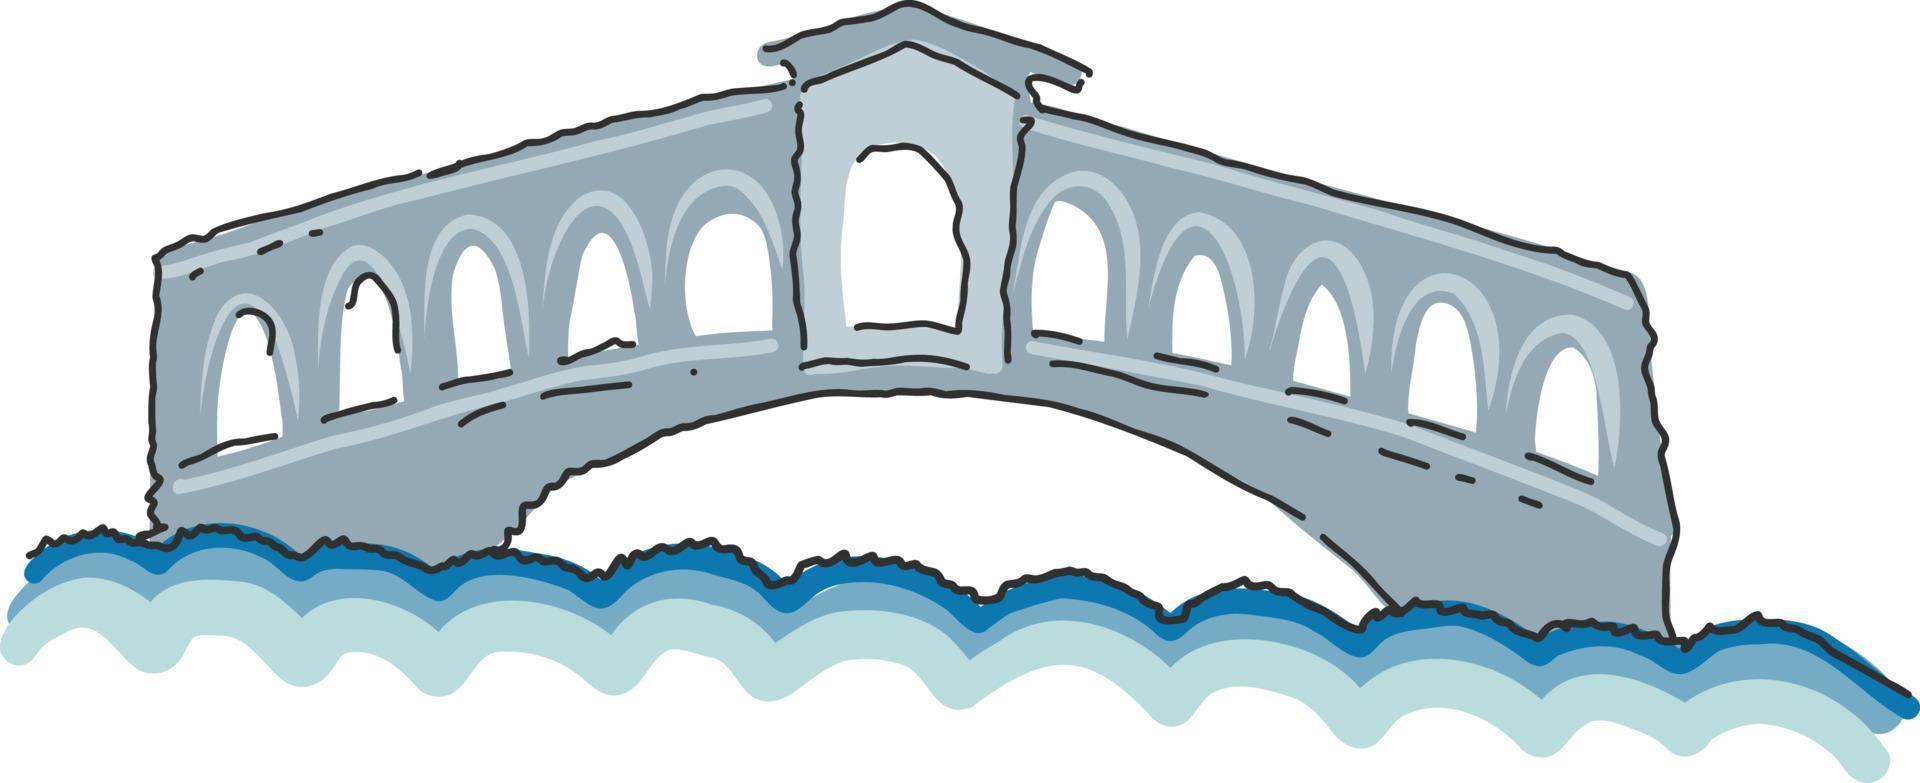 illustrazione di stile scarabocchiato del ponte di rialto. semplice illustrazione del vettore ponte di rialto venezia, italia. ponte di rialto, monumento architettonico d'italia.